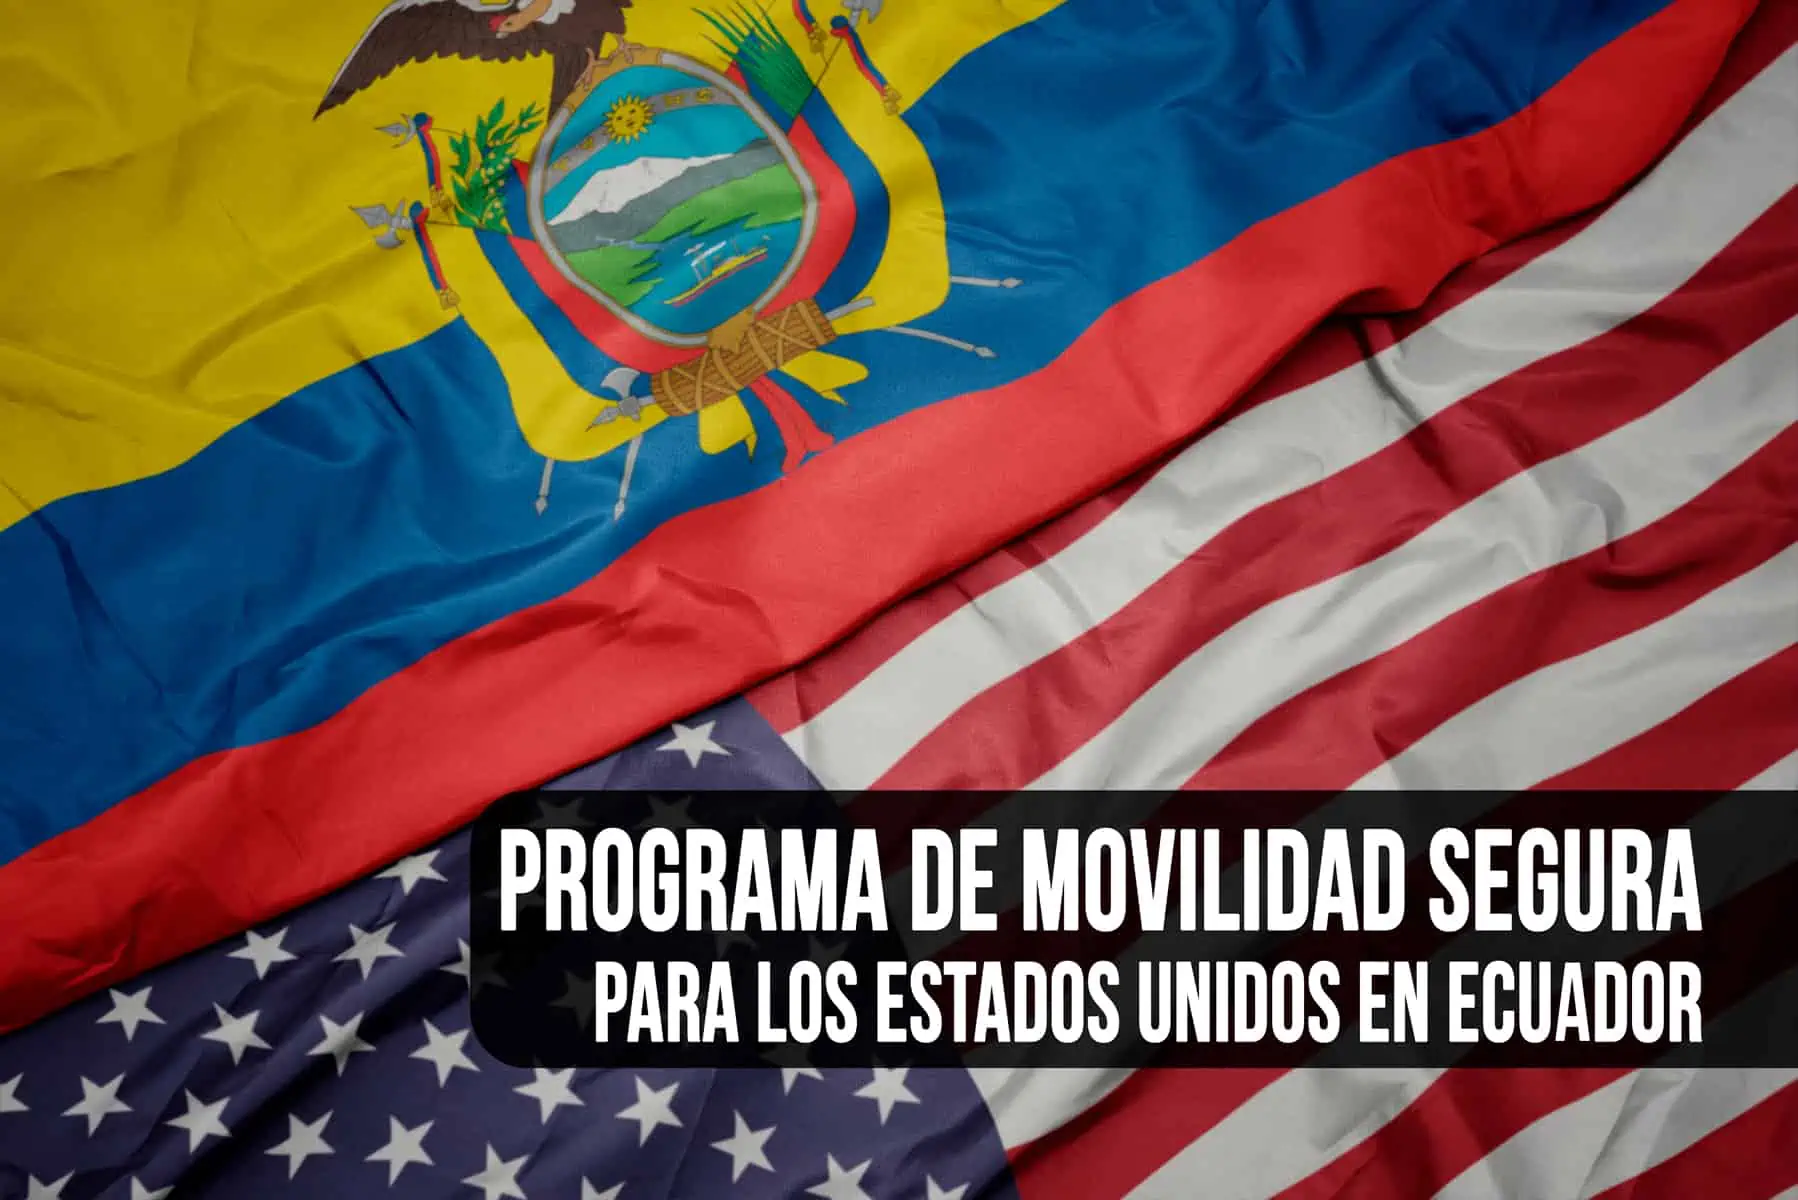 ¿Cómo acceder al Programa de Movilidad Segura para los Estados Unidos en Ecuador?